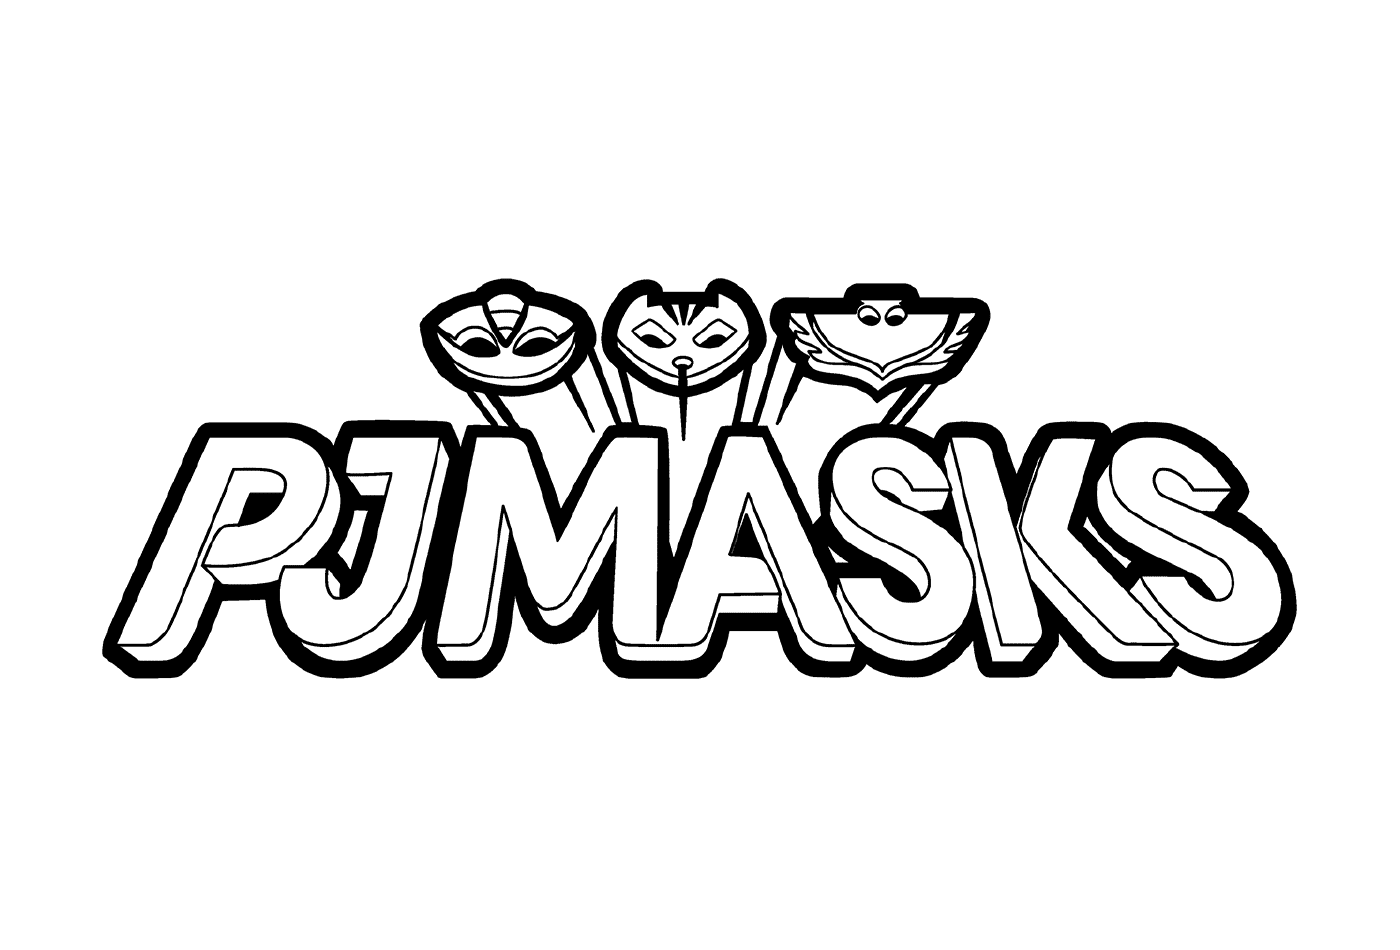  Logotipo de Pijamasques em preto e branco 